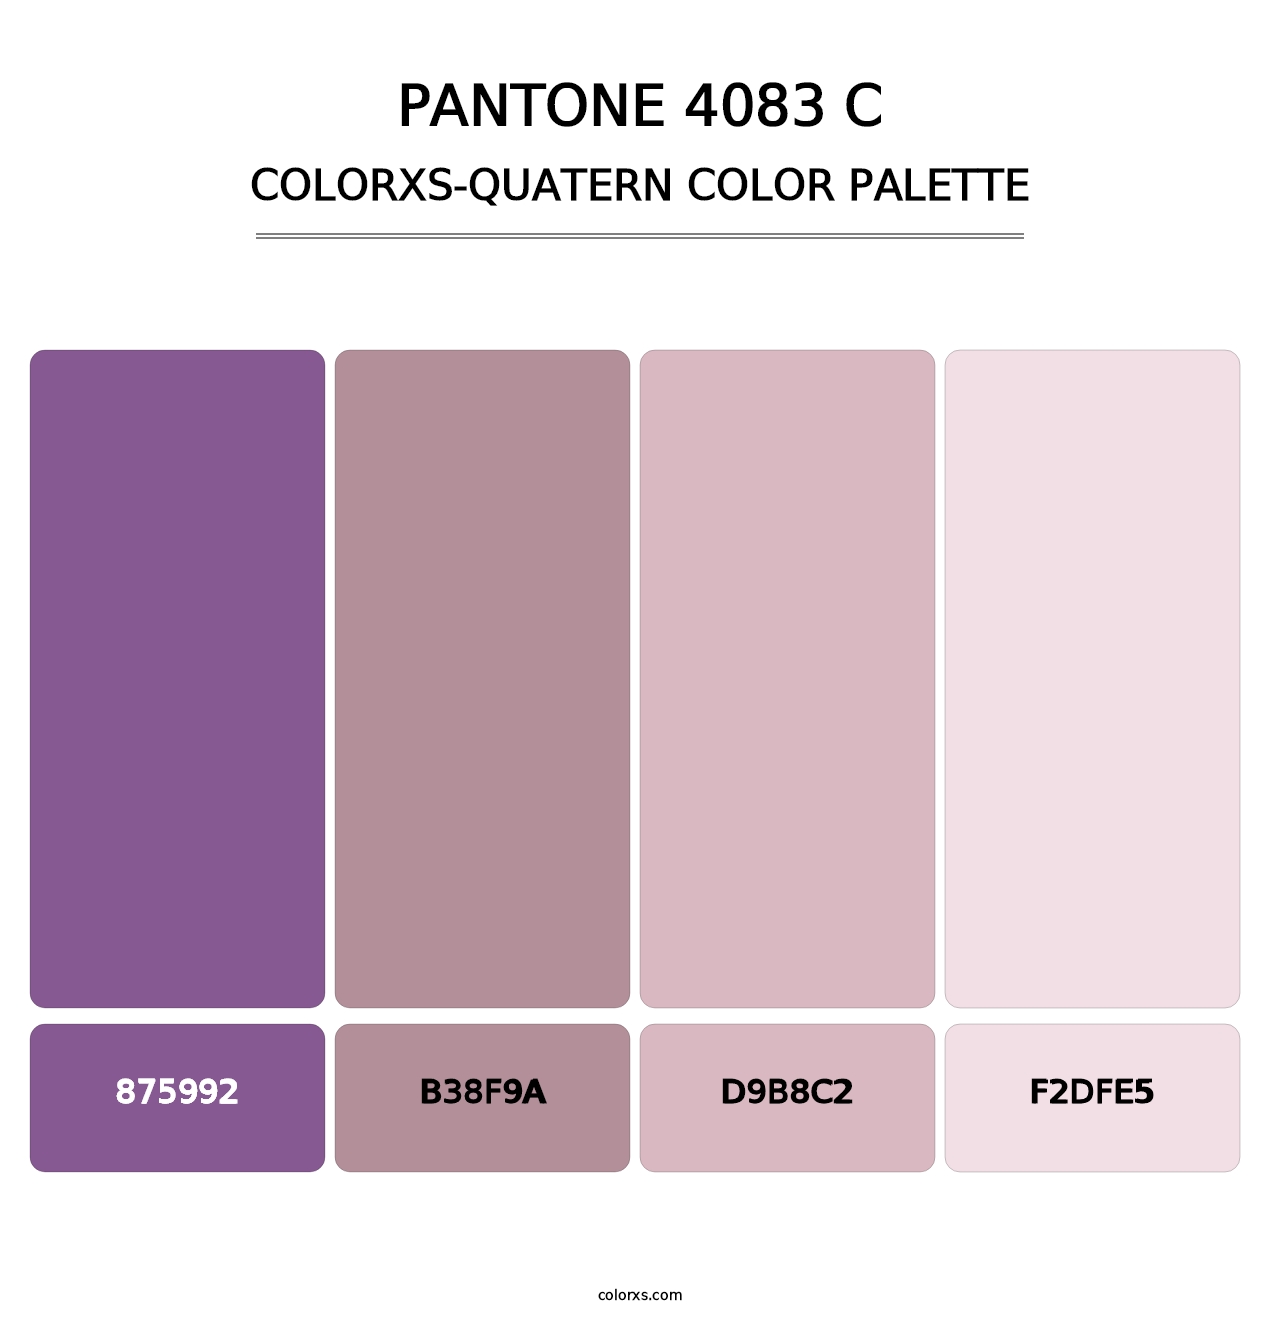 PANTONE 4083 C - Colorxs Quatern Palette